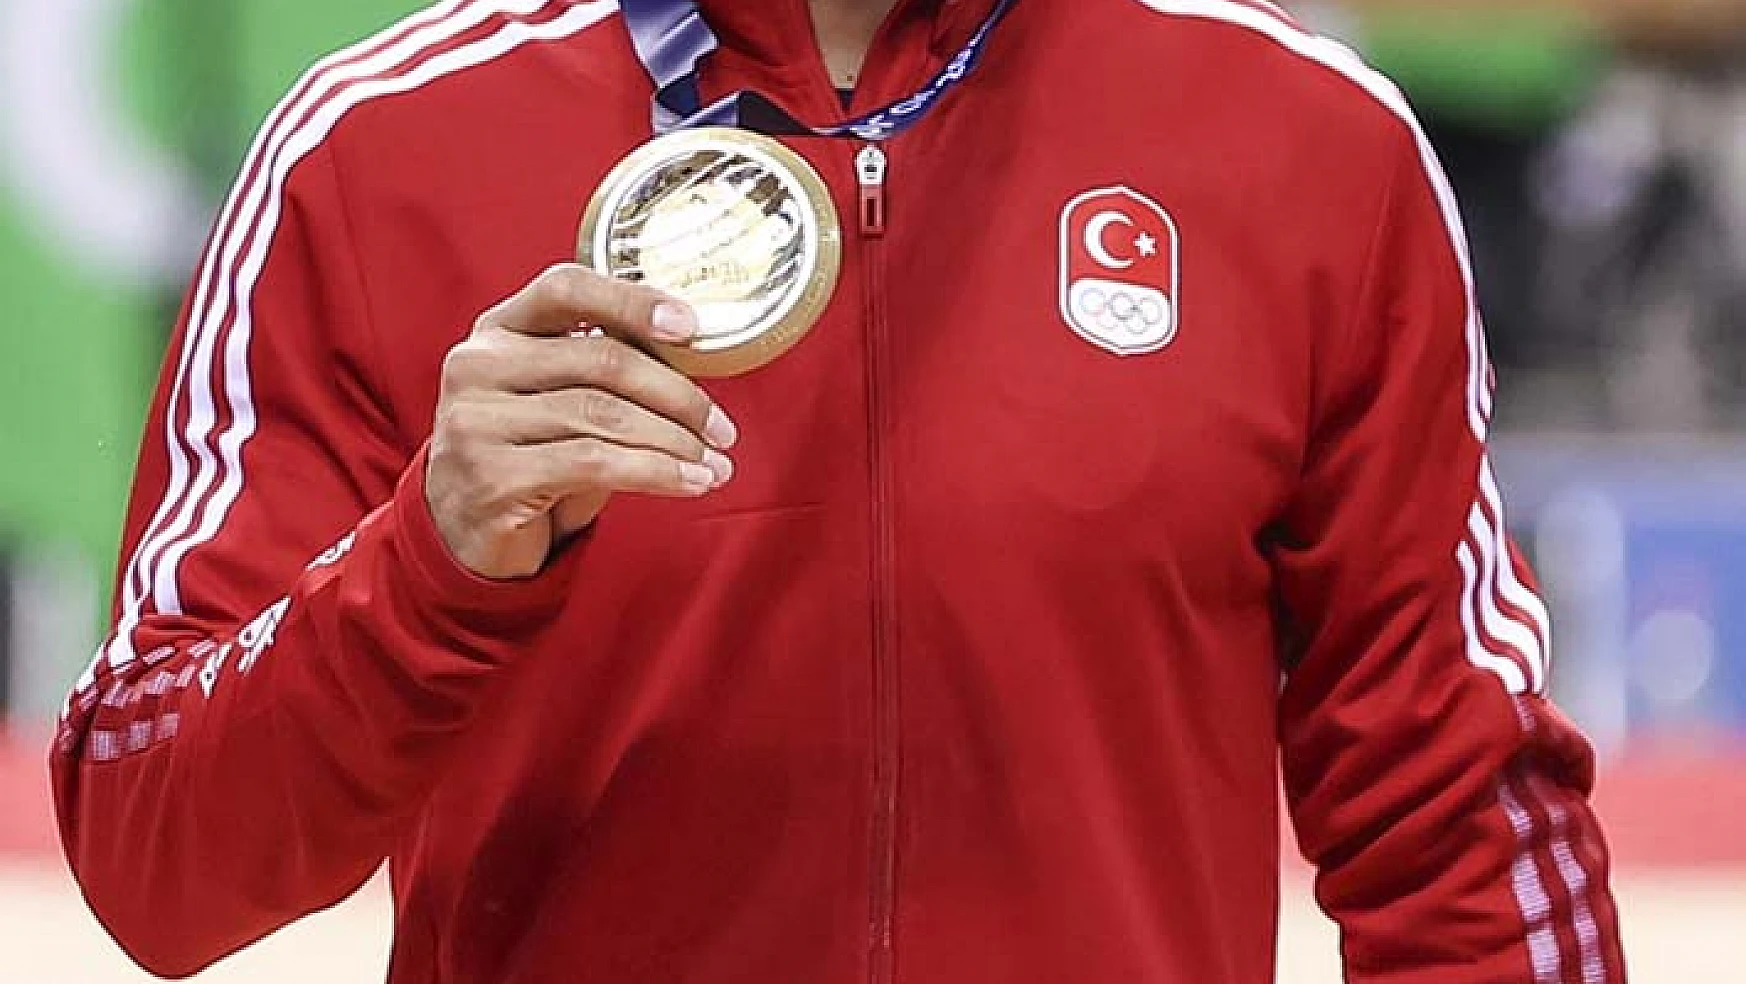 Türkiye bu yıl uluslararası yarışmalarda 5 bin 279 madalya kazandı